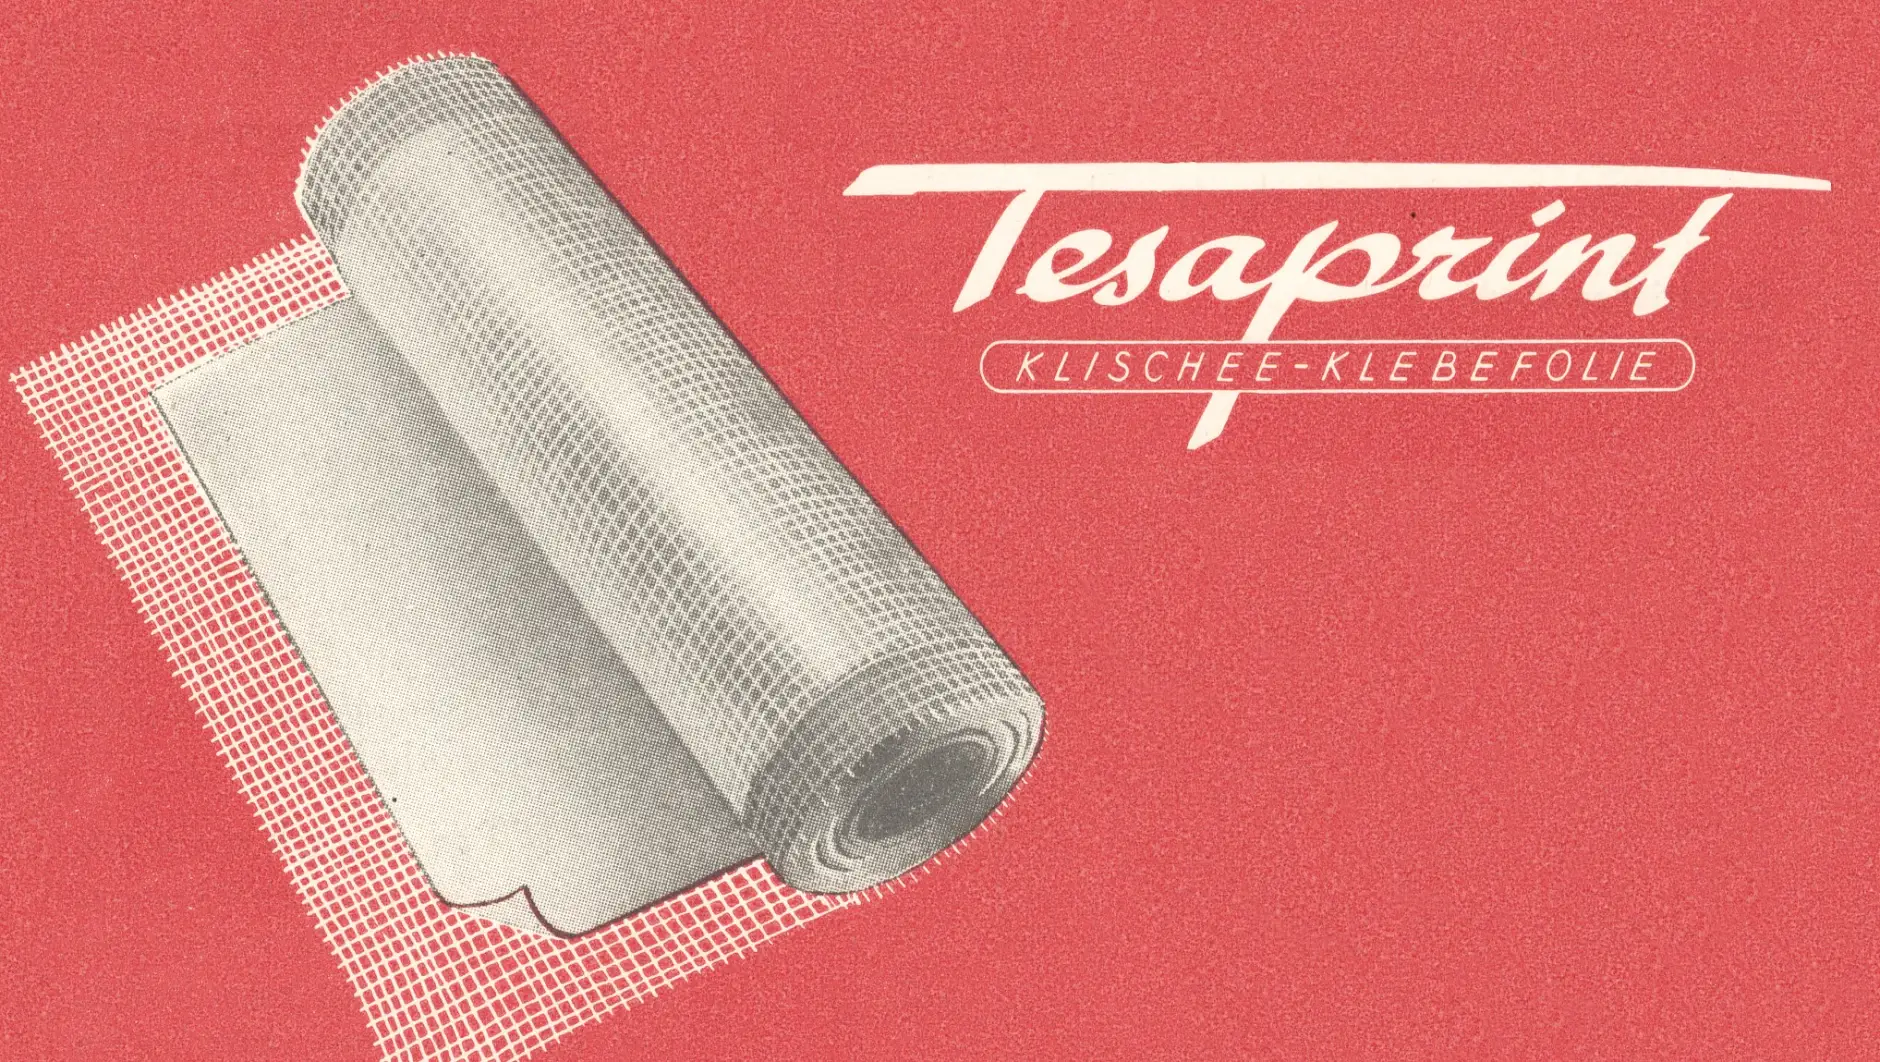 tesaprint blev allerede brugt i trykkeribranchen i 1949.